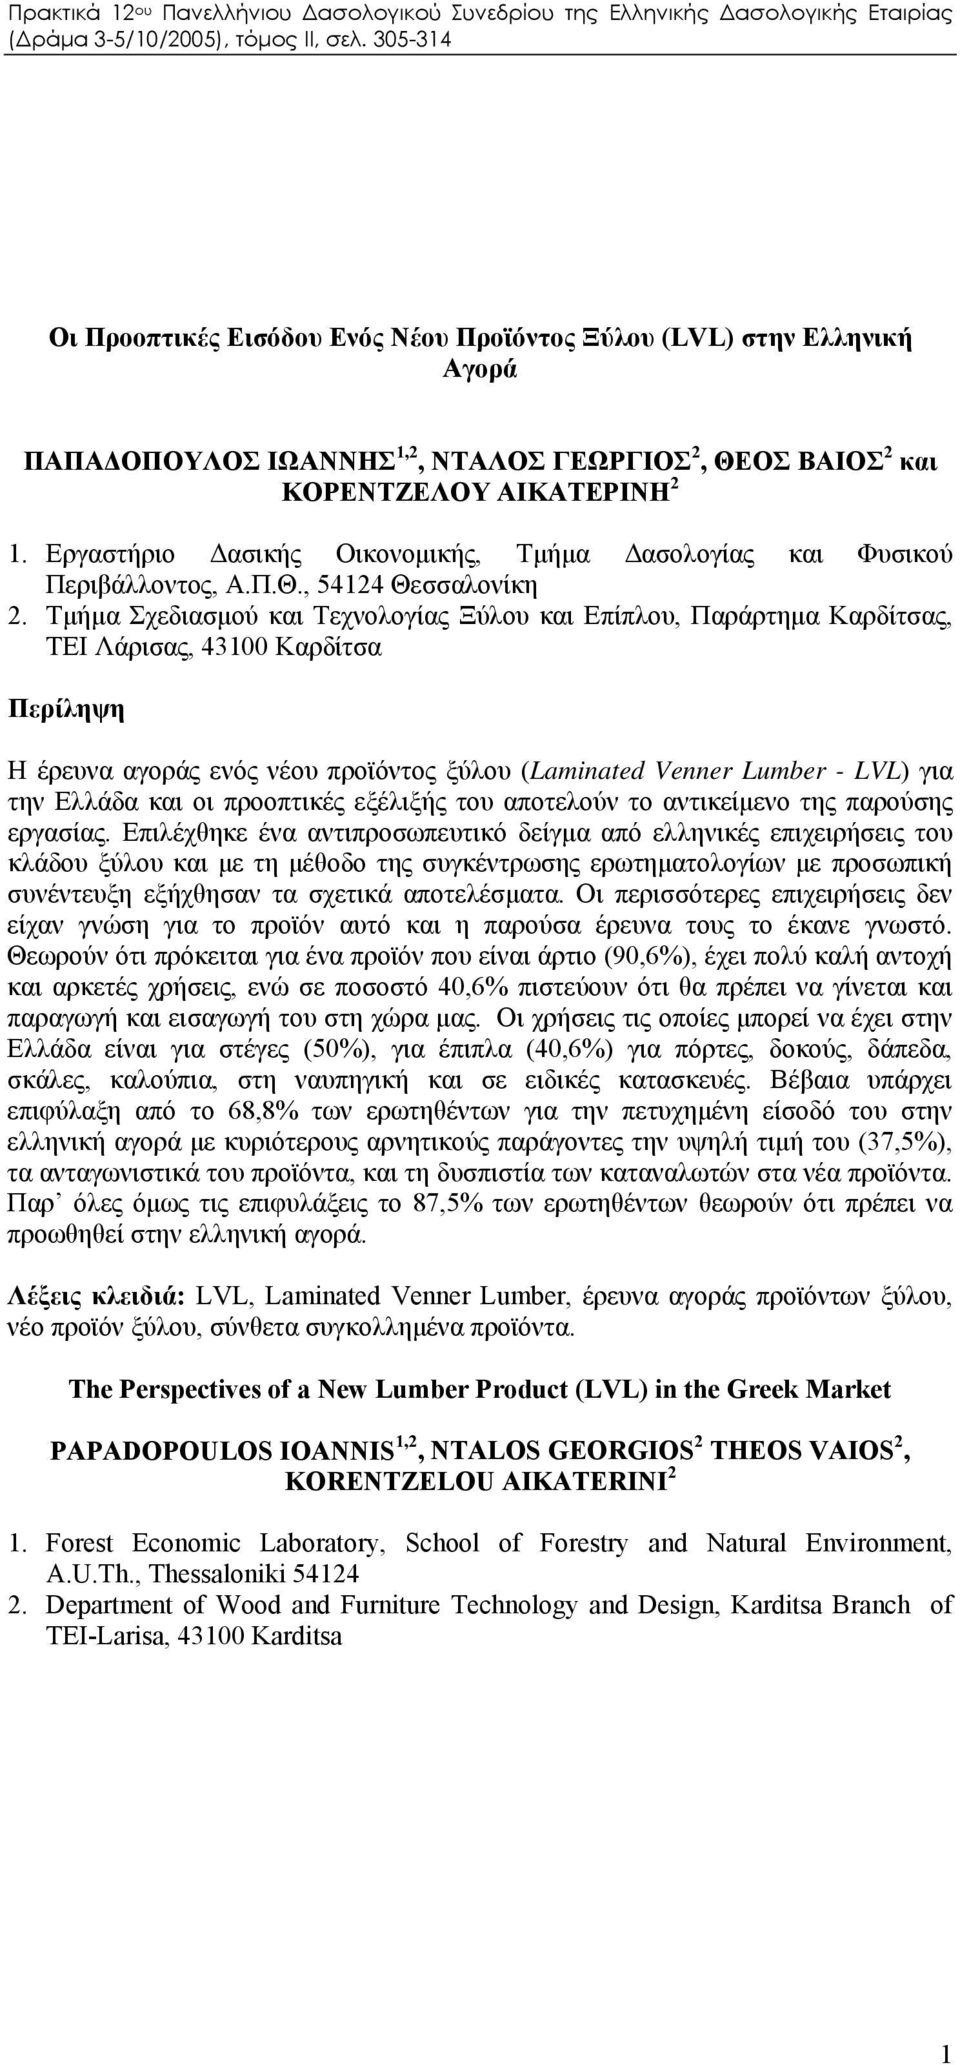 Τμήμα Σχεδιασμού και Τεχνολογίας Ξύλου και Επίπλου, Παράρτημα Καρδίτσας, ΤΕΙ Λάρισας, 43100 Καρδίτσα Περίληψη Η έρευνα αγοράς ενός νέου προϊόντος ξύλου (Laminated Venner Lumber - LVL) για την Ελλάδα